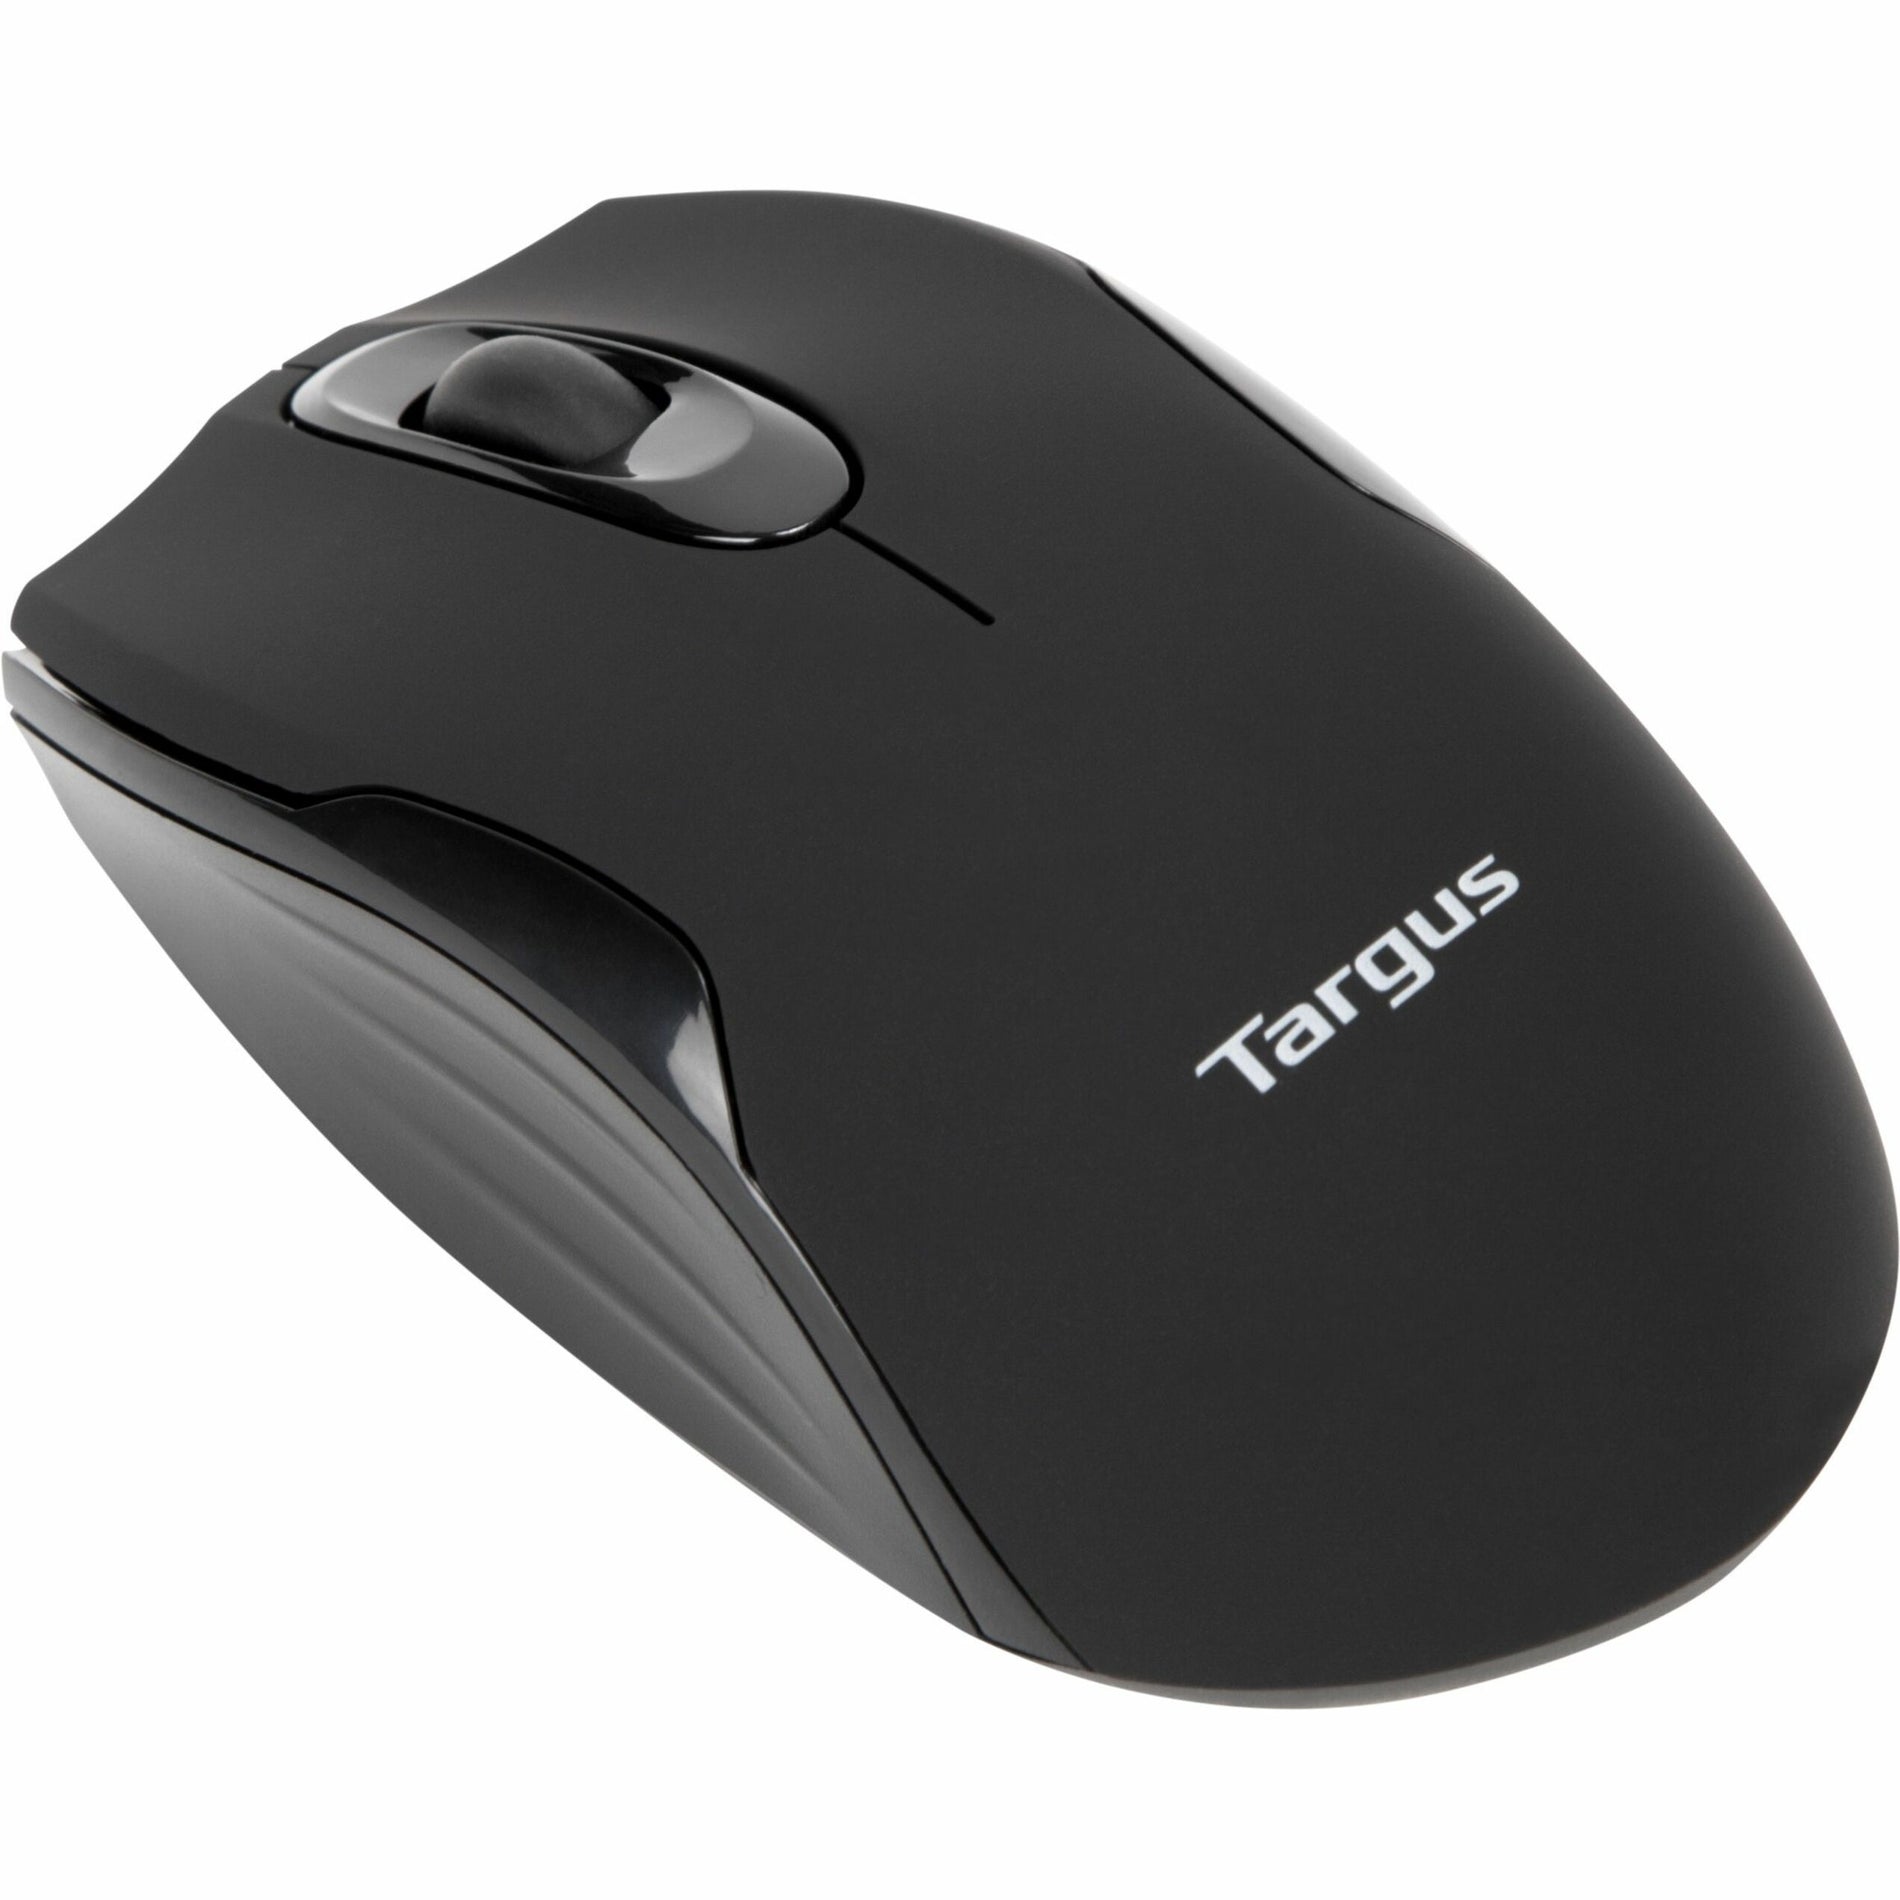 Targus AMW575TT W575 Wireless Mouse, Radio Frequency, 1600 dpi, USB Receiver, 1 Year Warranty